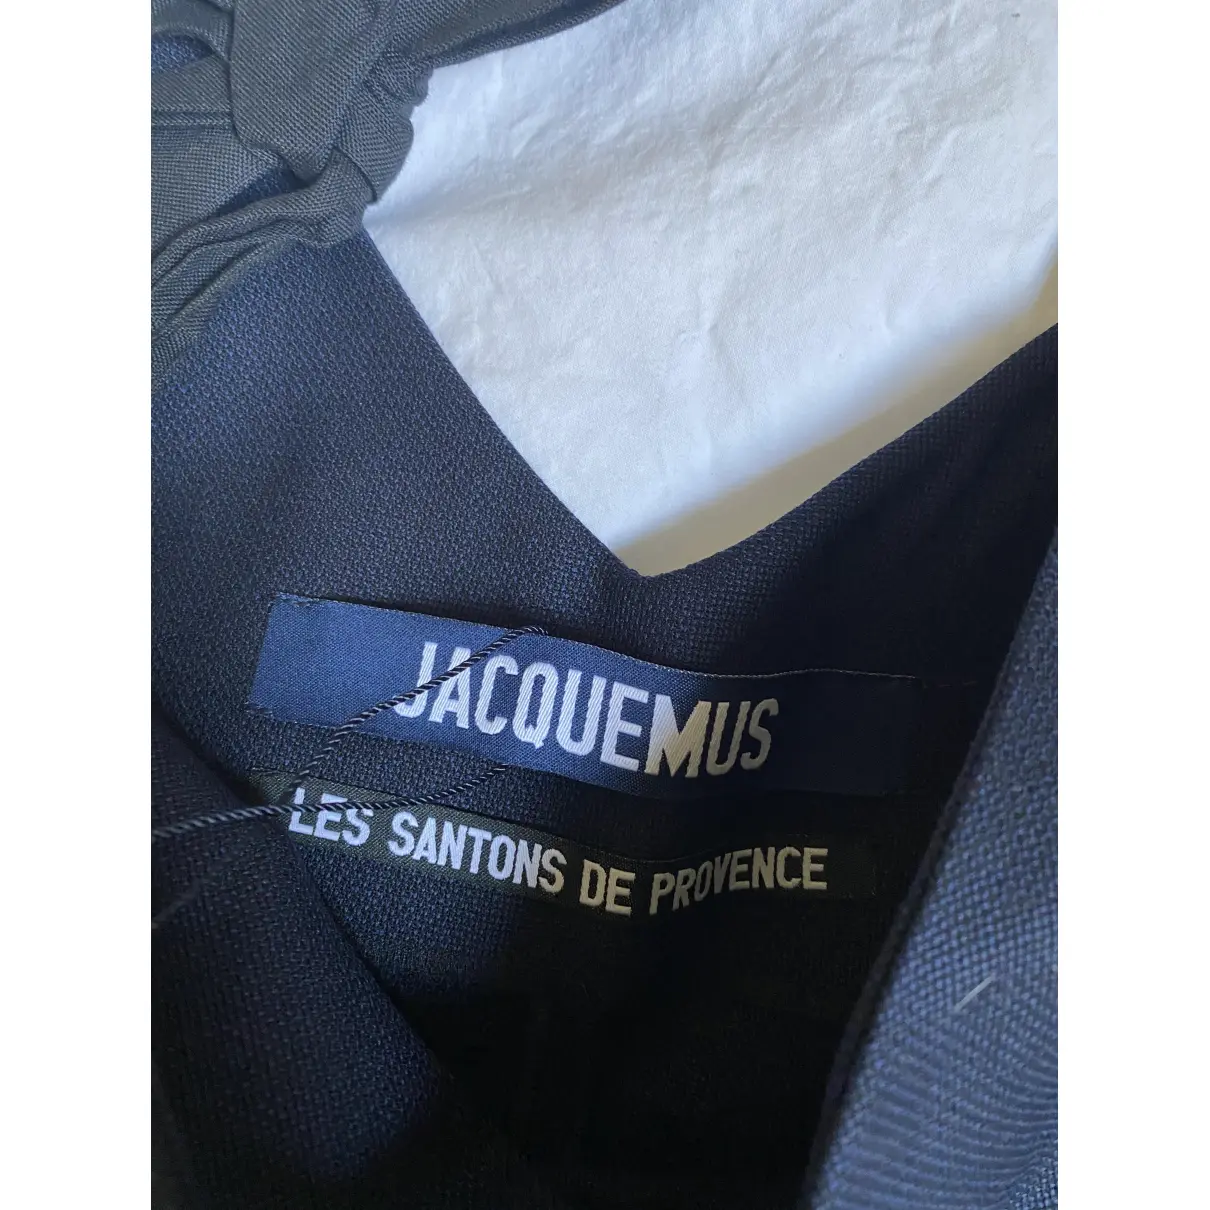 Buy Jacquemus Les Santons de Provence wool blouse online